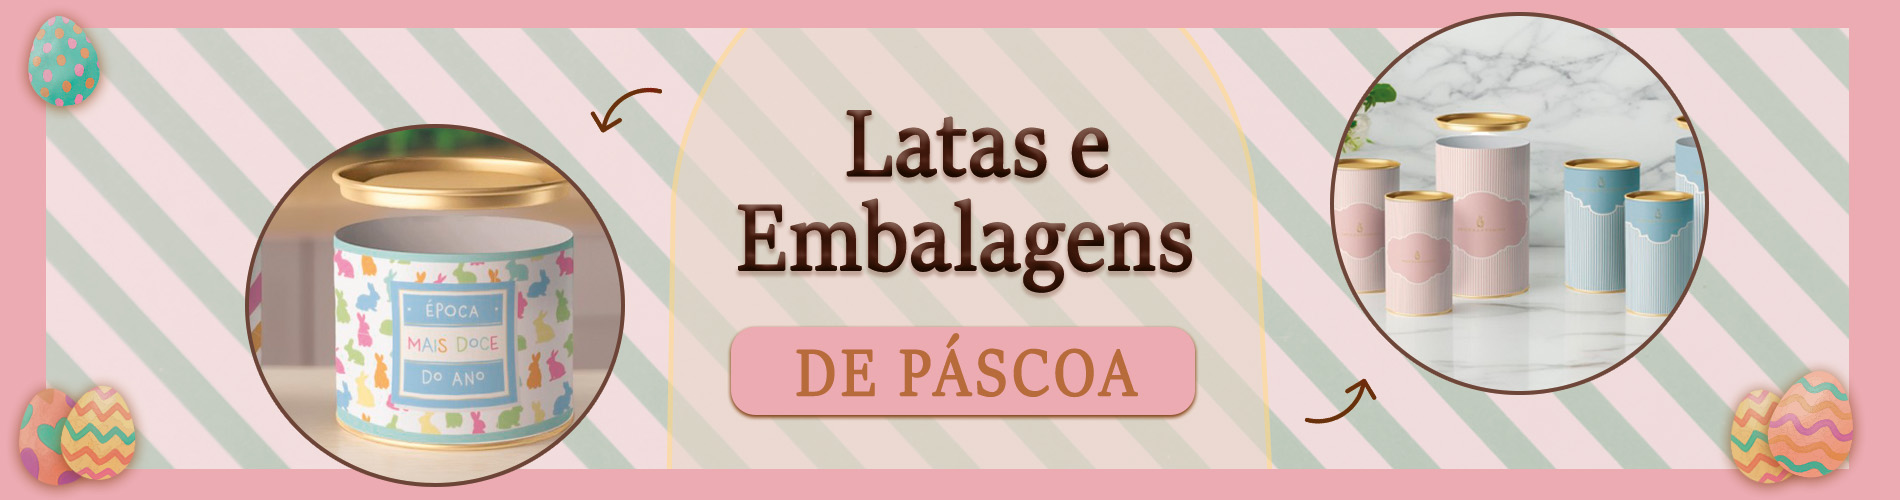 Banner Categoria páscoa Latas